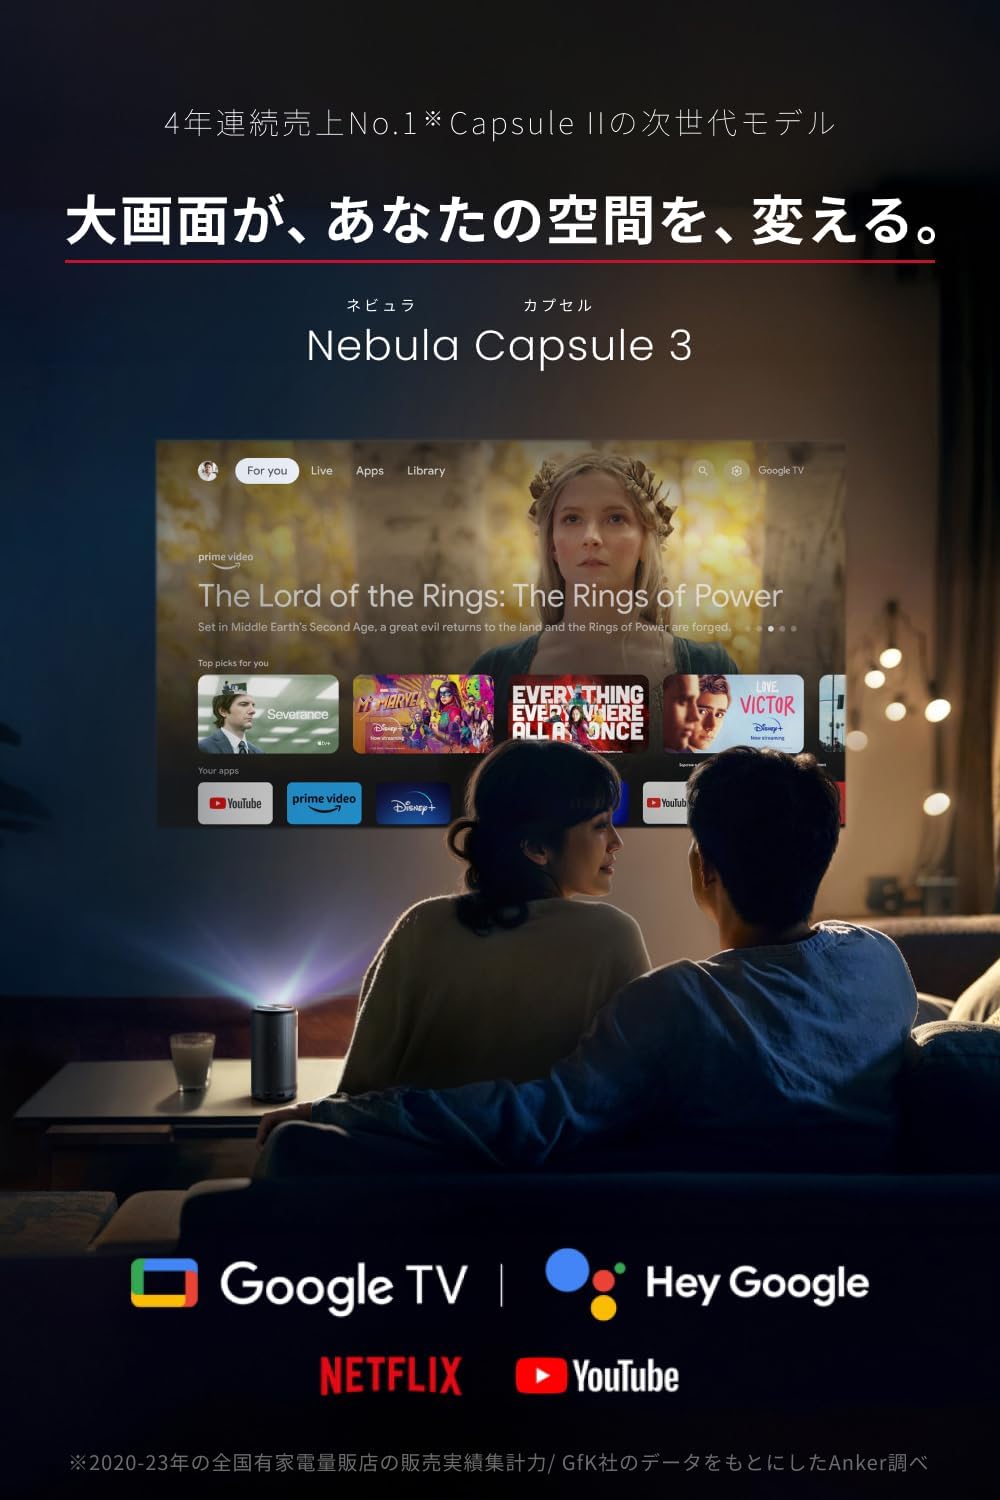 Anker Nebula (nebyula) Capsule 3 мобильный проектор Google TV полный HD 200ANSI люмен максимальный 120 дюймовый 8W динамик Focus регулировка якорь nebyula